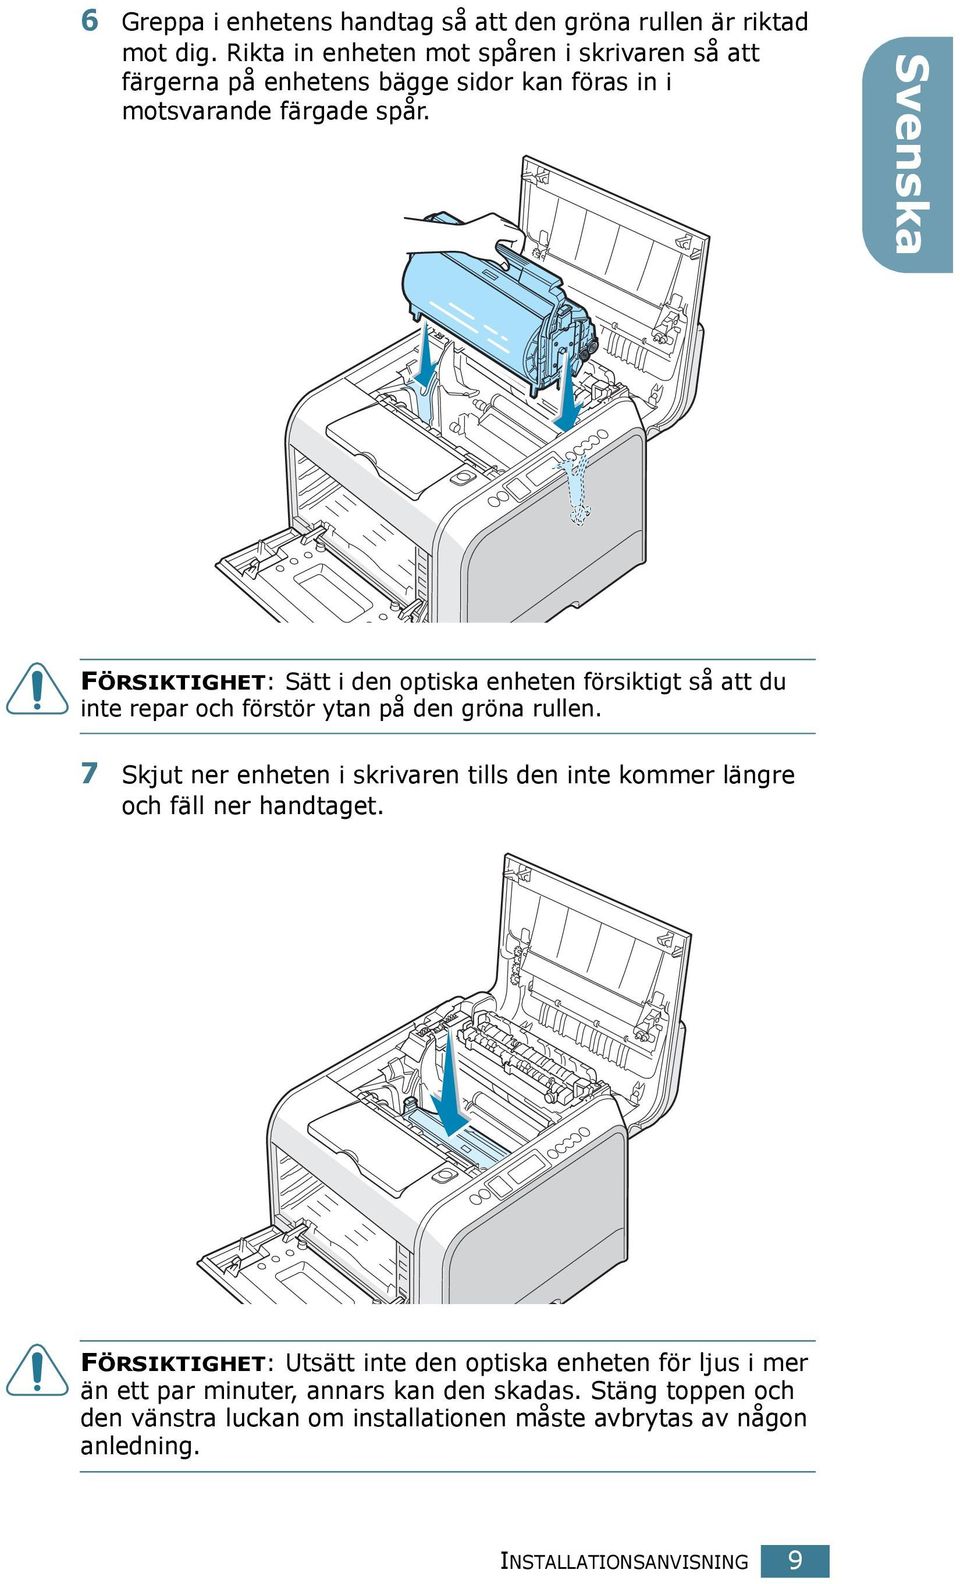 Svenska FÖRSIKTIGHET: Sätt i den optiska enheten försiktigt så att du inte repar och förstör ytan på den gröna rullen.